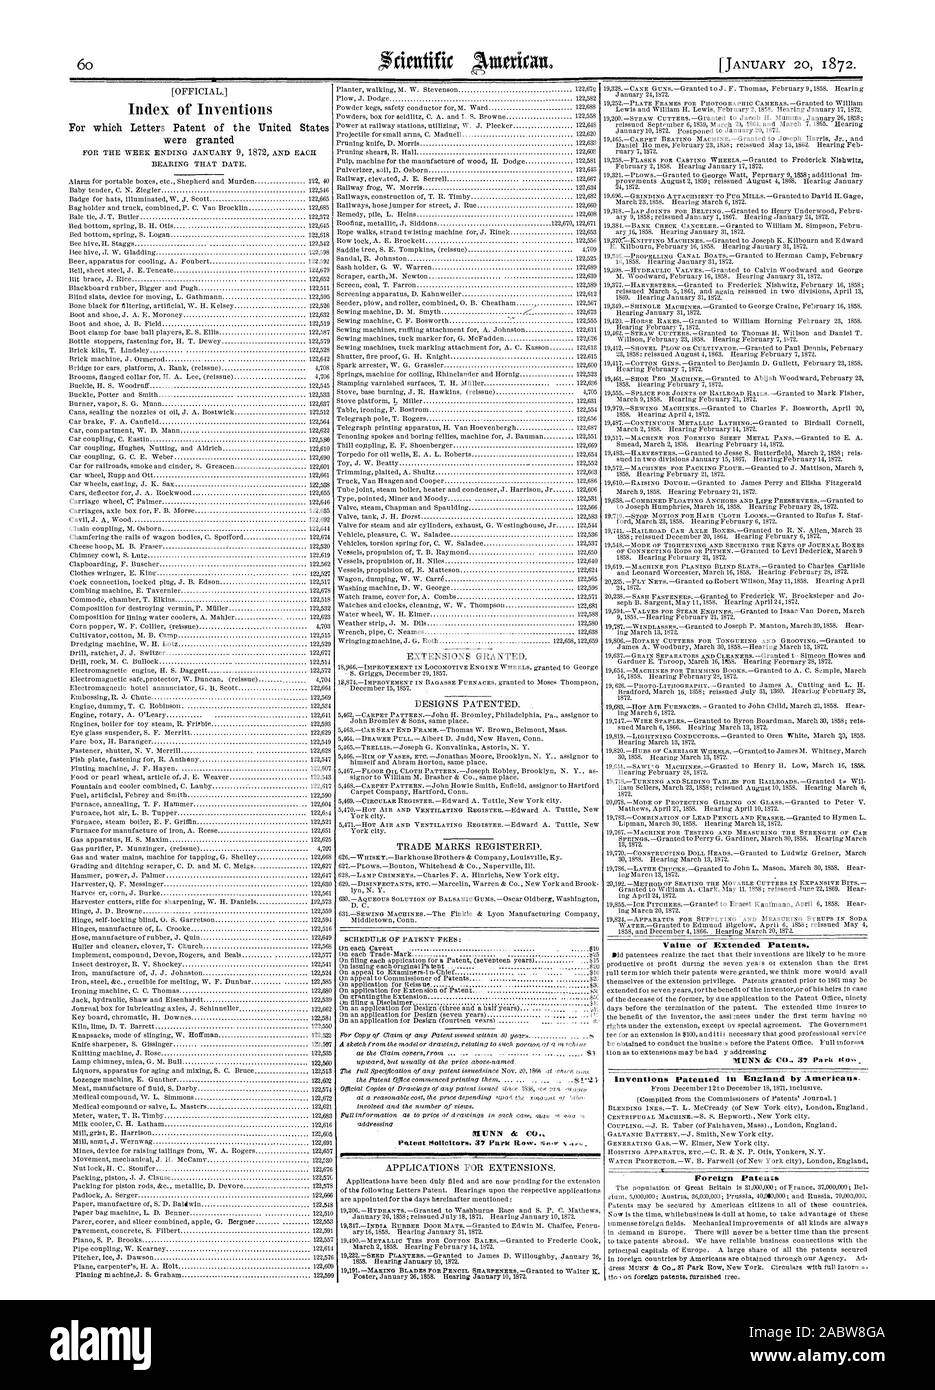 Valore dei brevetti estesi. Invenzioni brevettate in Inghilterra dagli americani. Brevetti stranieri, Scientific American, 1872-01-20 Foto Stock